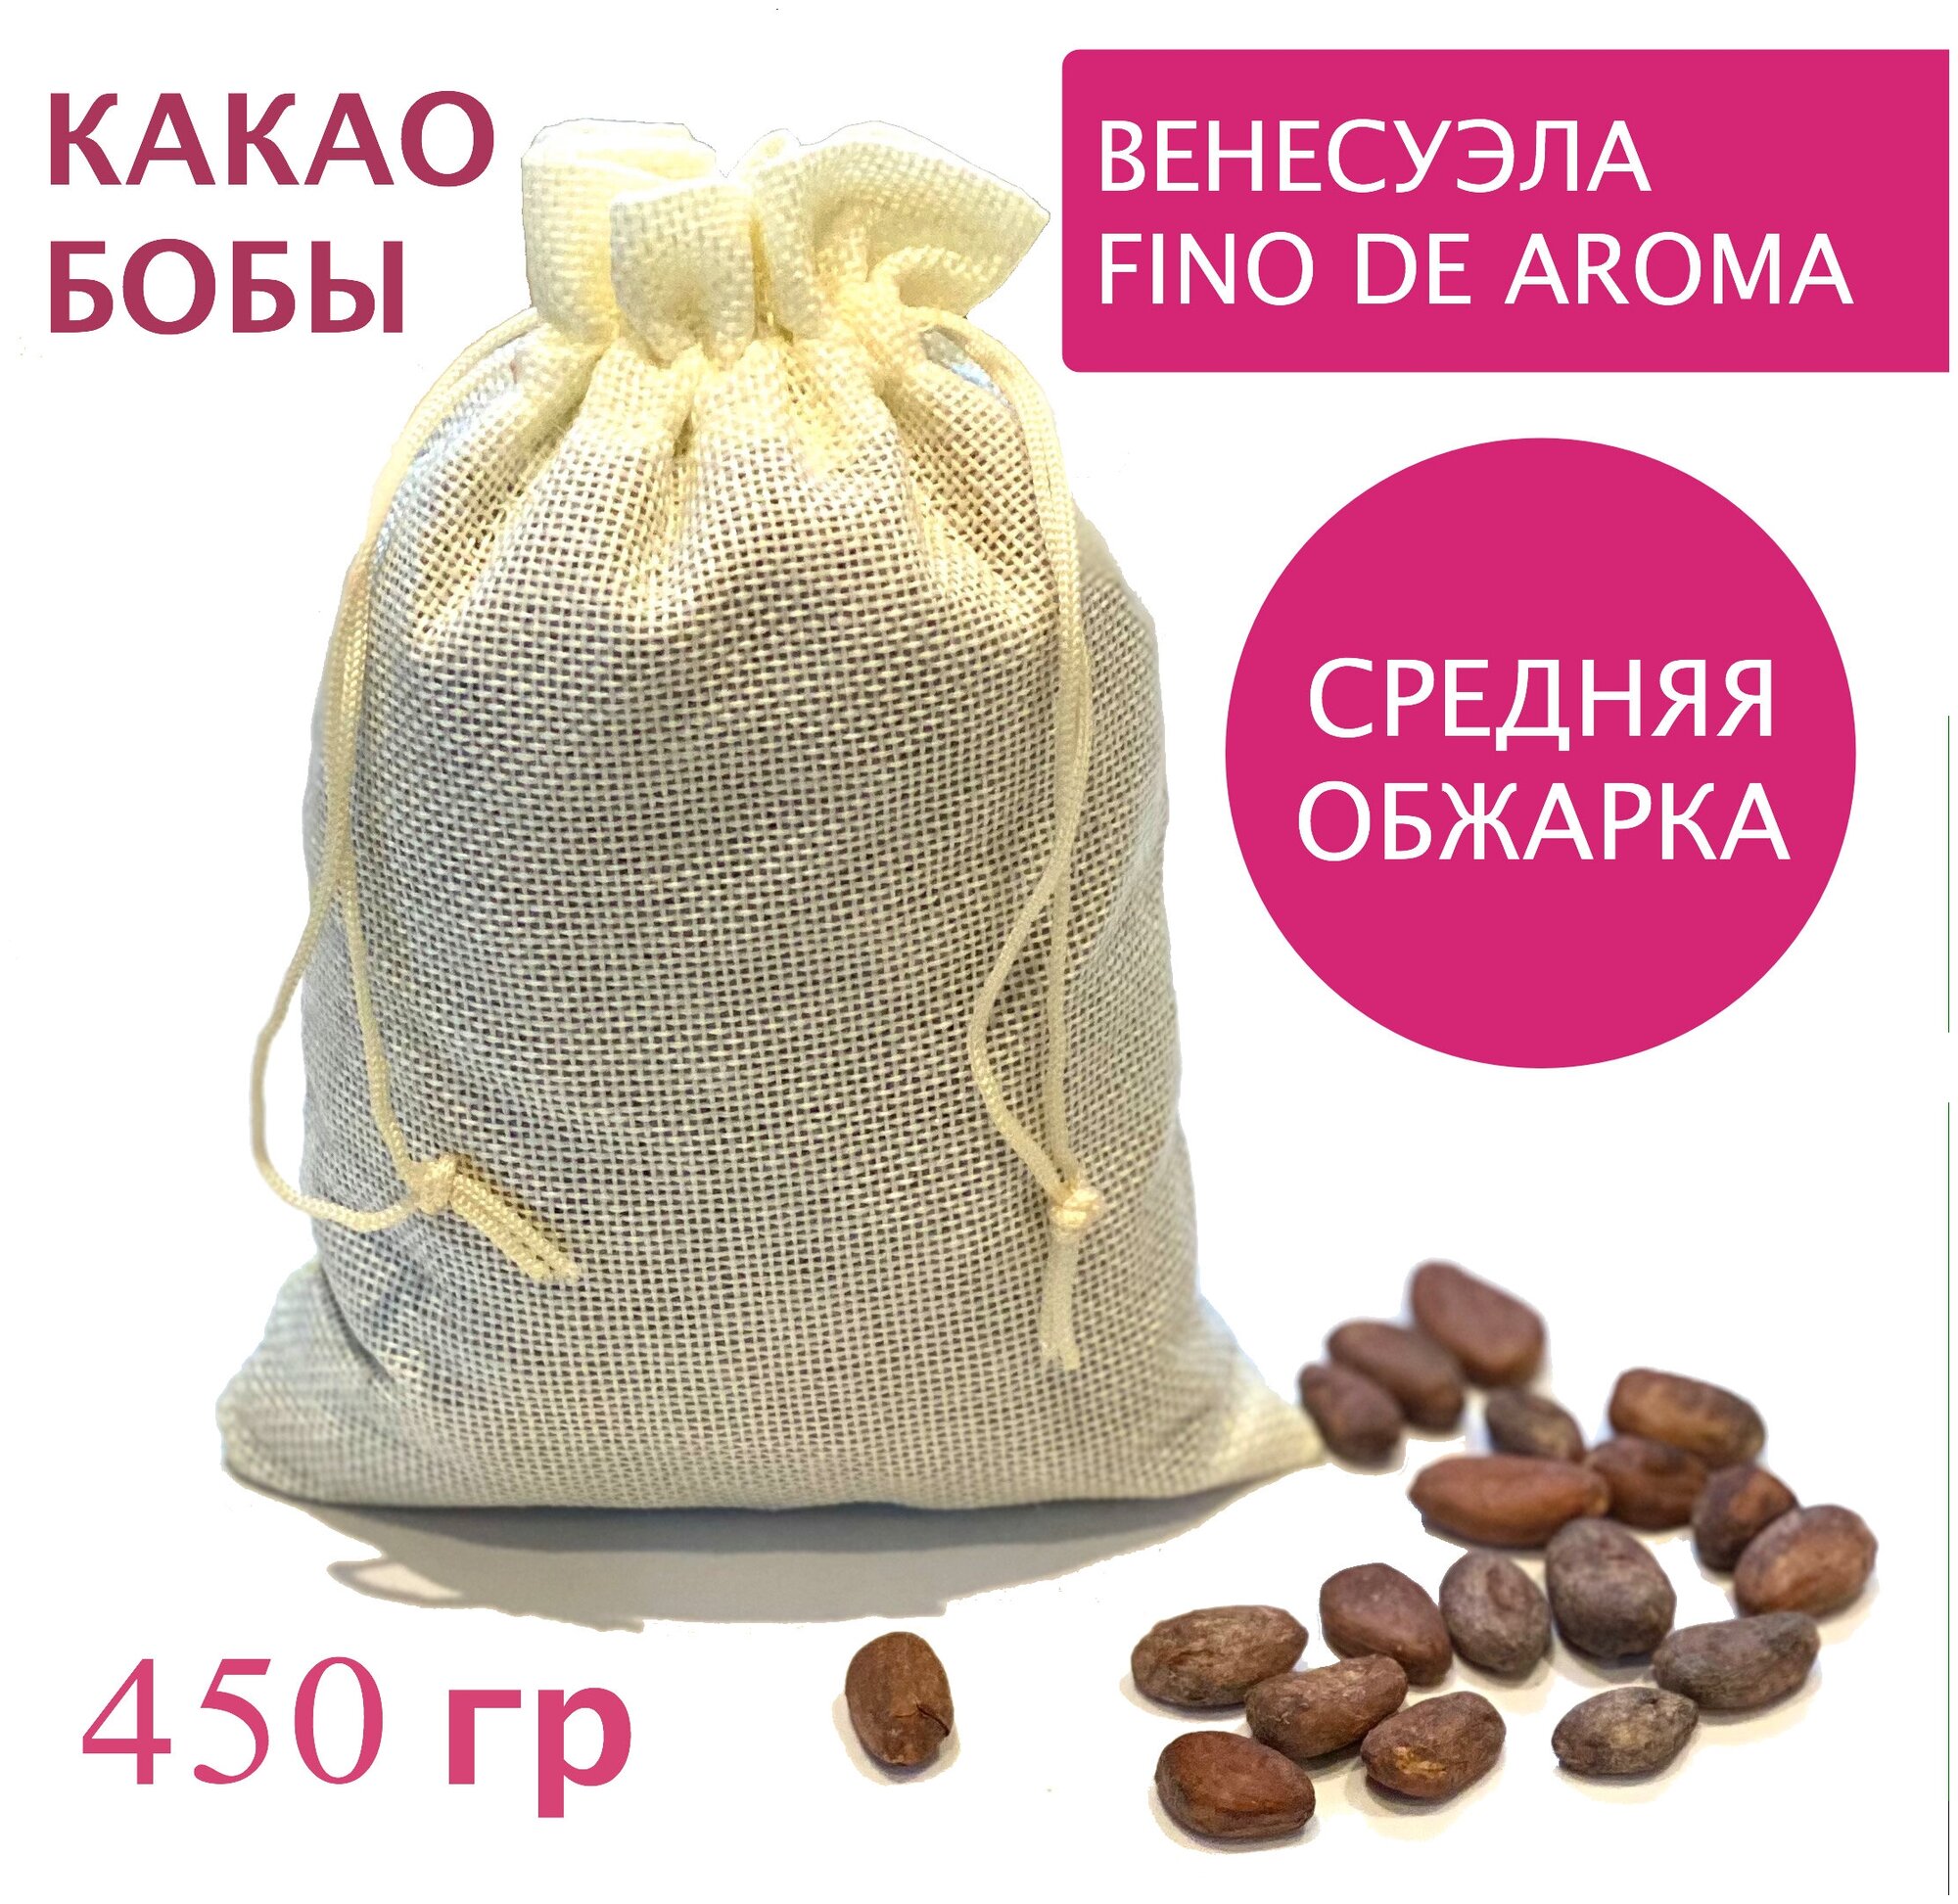 Какао бобы натуральные обжаренные неочищенные, Венесуэла Fino de Aroma, 450 гр